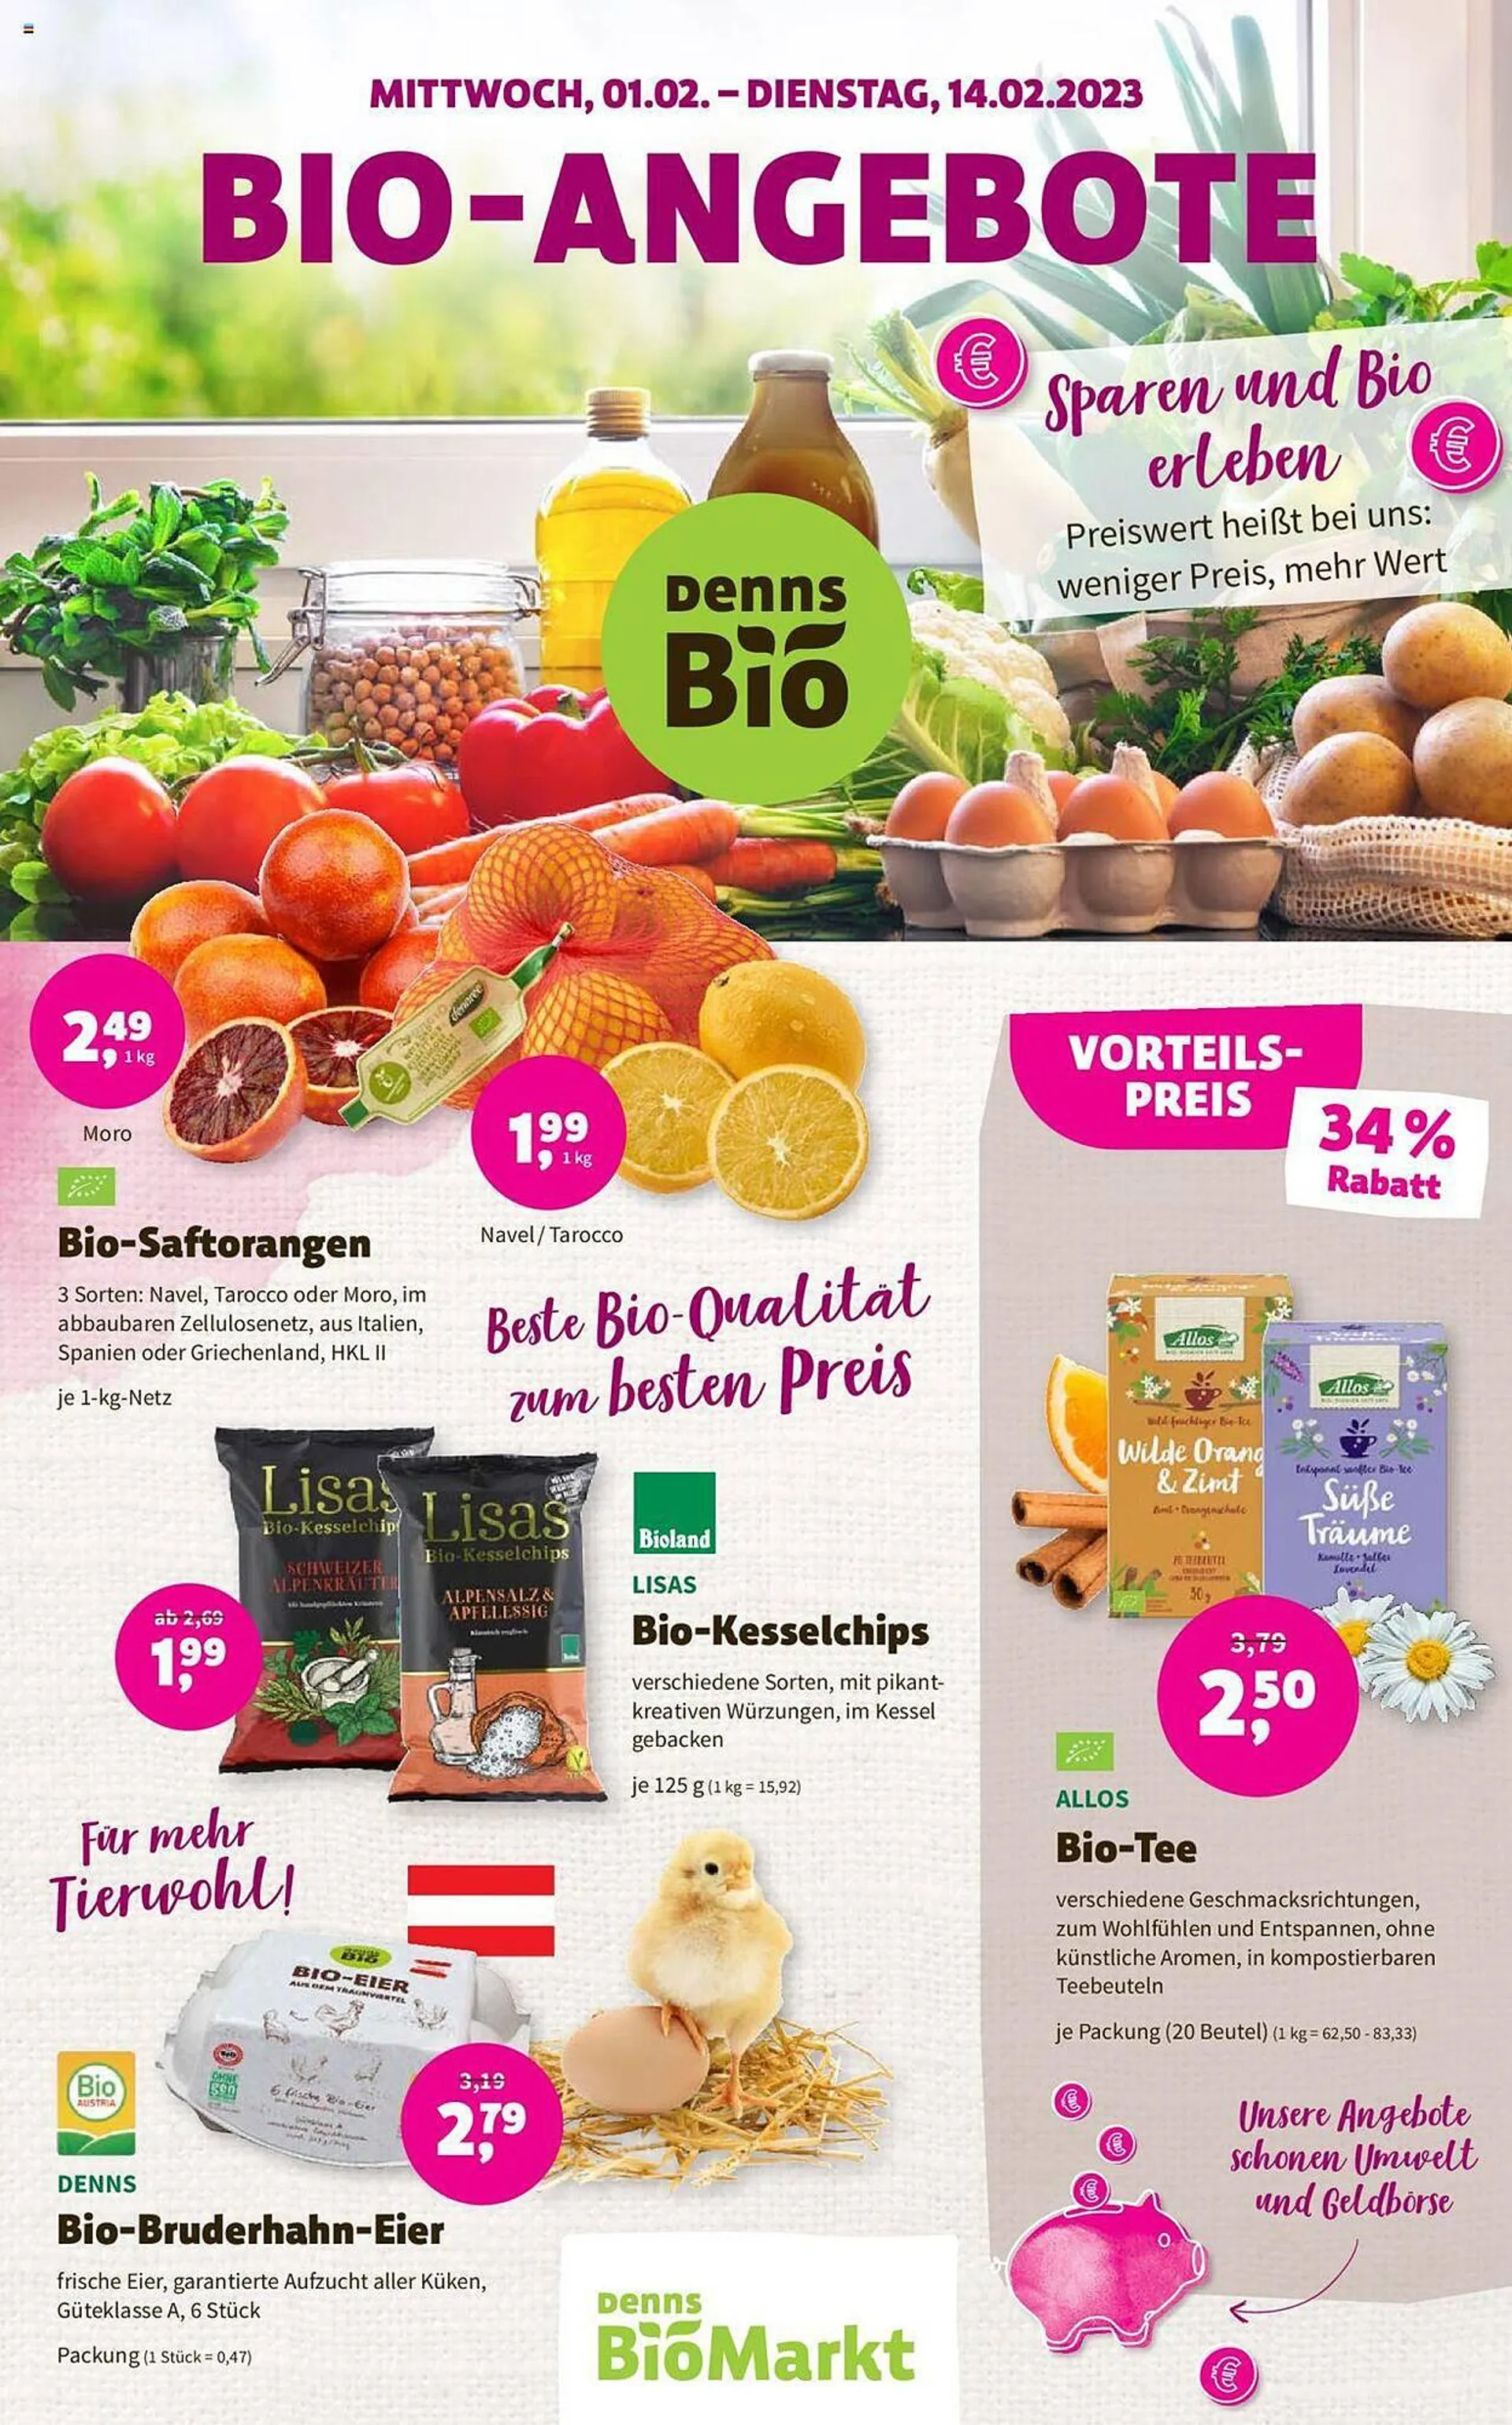 Denns Biomarkt Flugblatt - 1